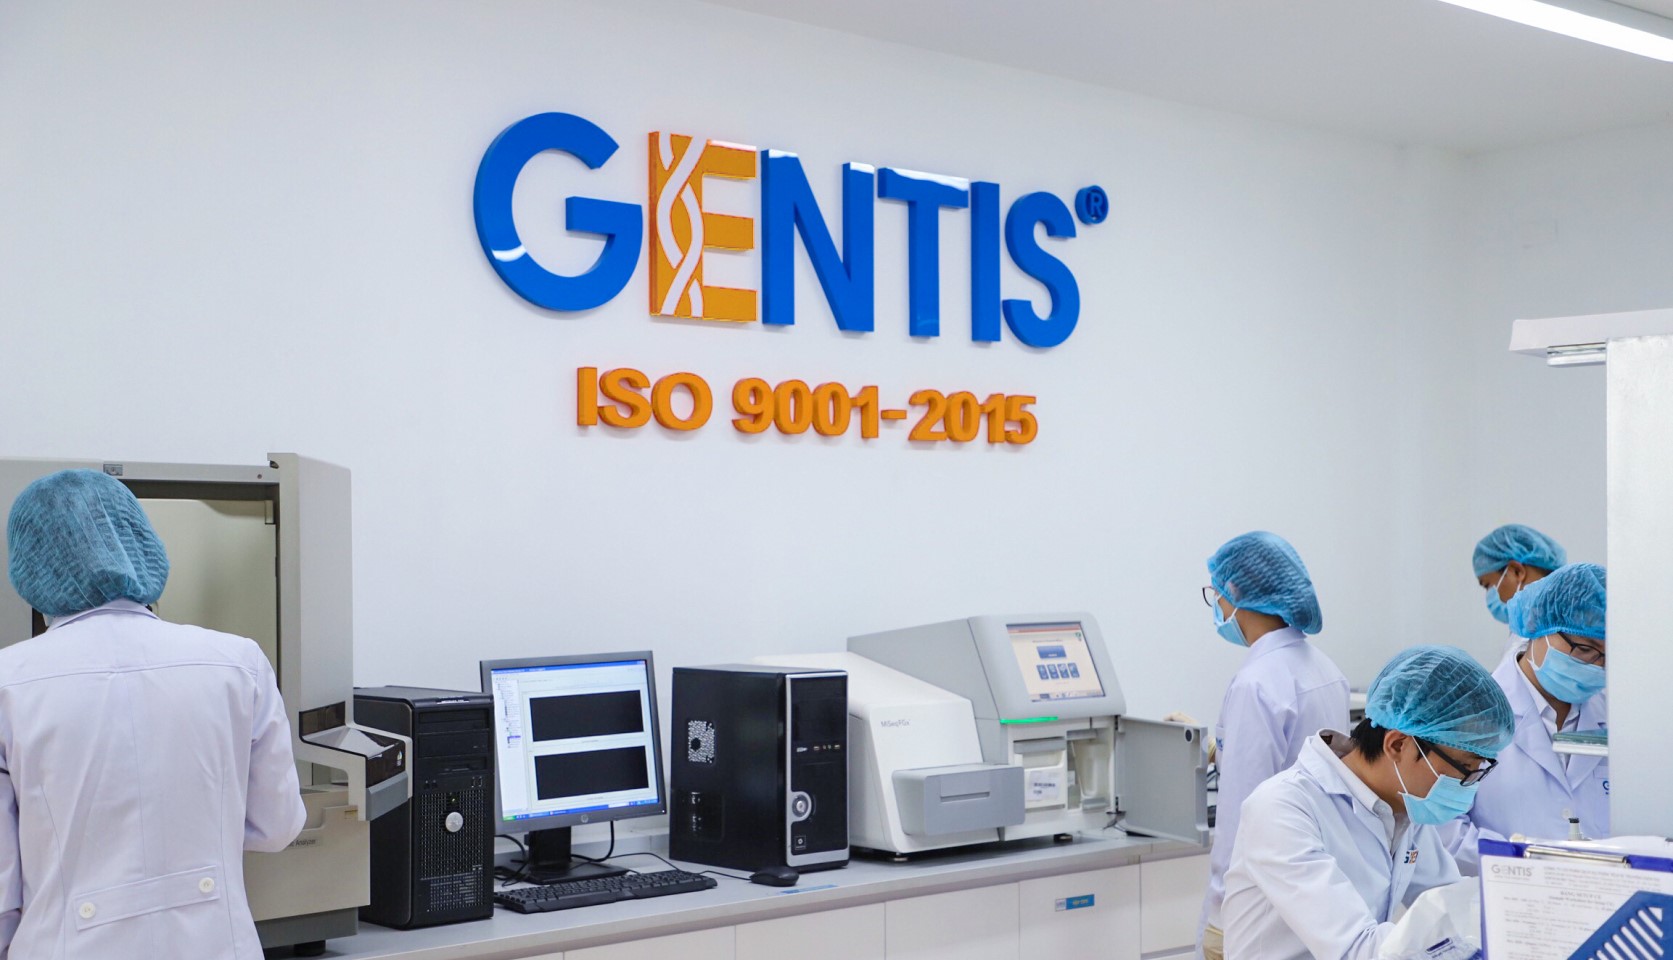 Trung tâm xét nghiệm di truyền quốc tế GENTIS - Xét nghiệm tại nhà ở Hà Nội